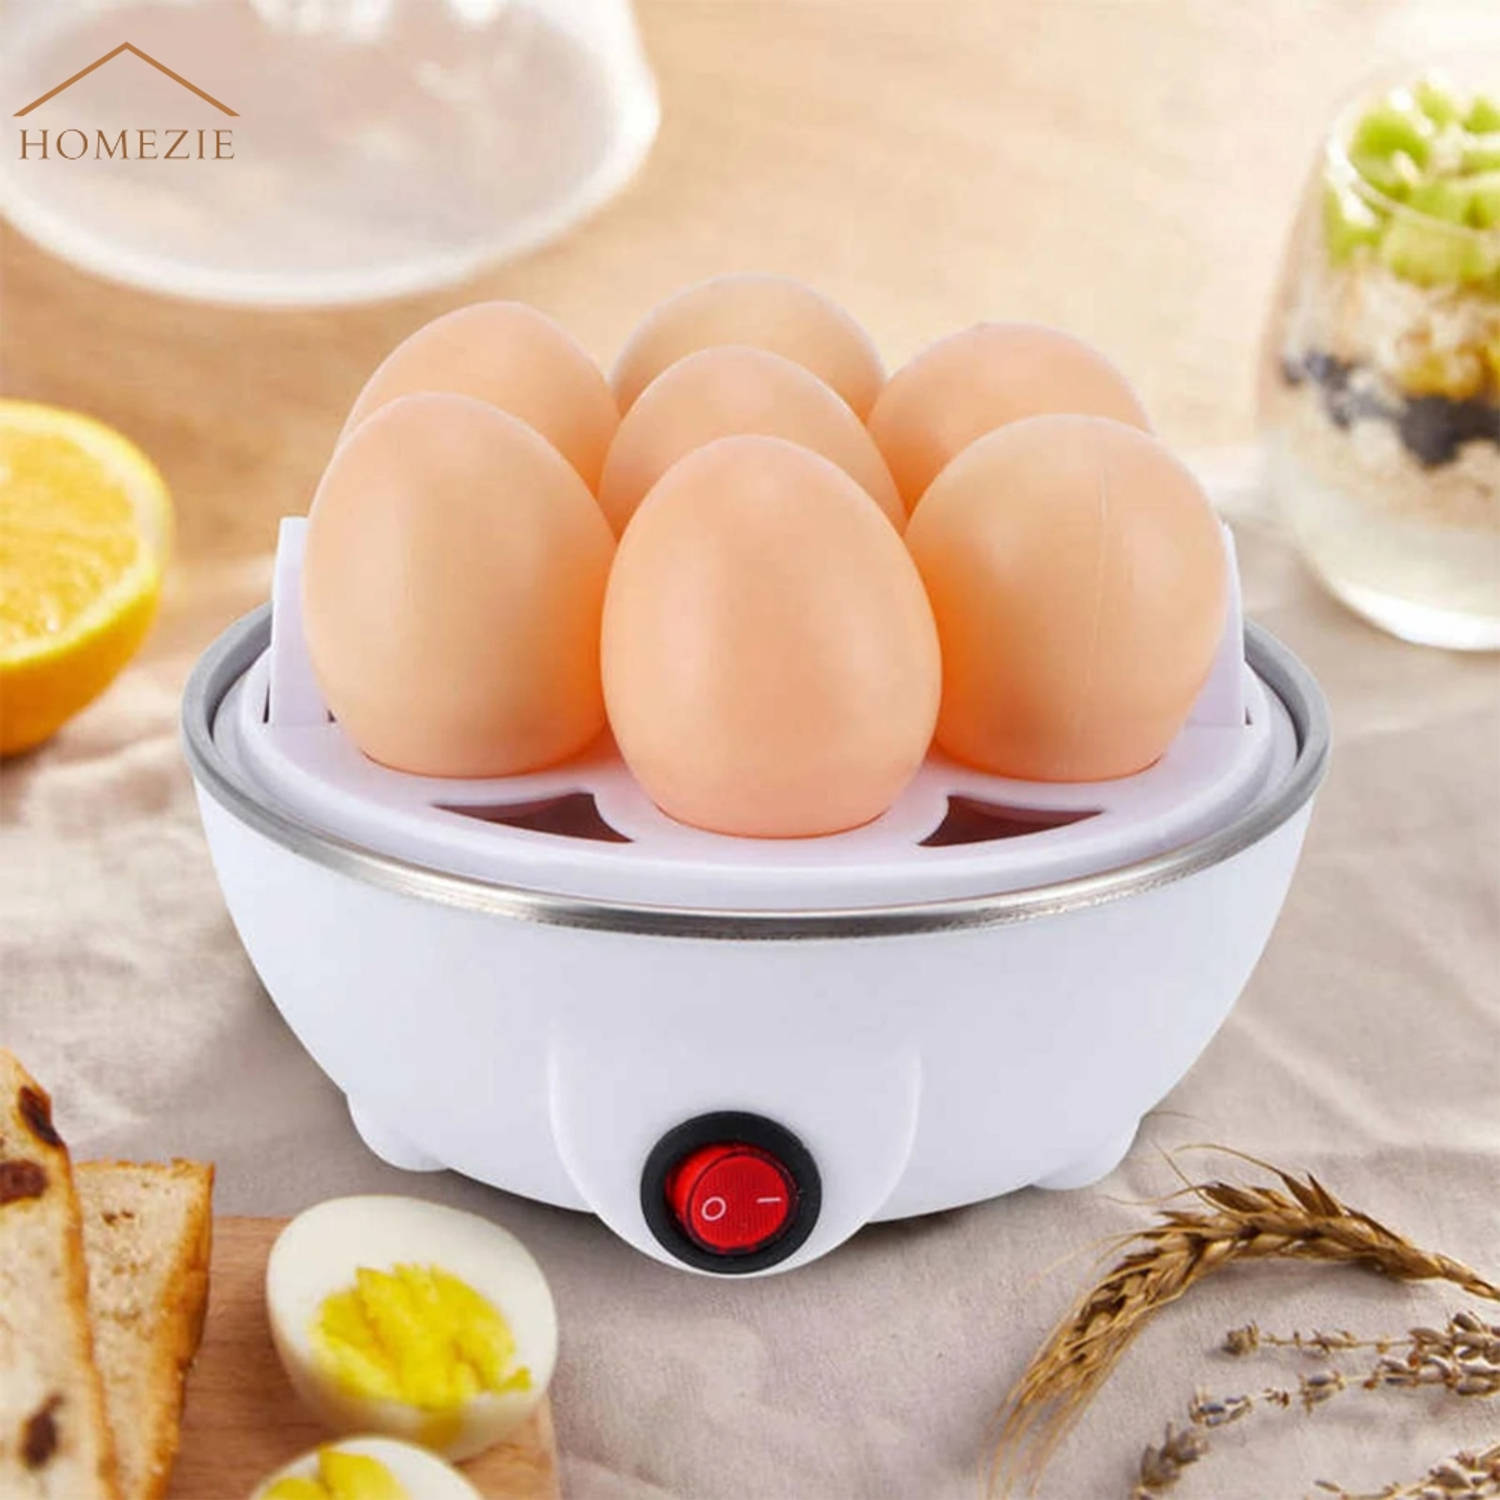 Homezie Eierkoker - Geschikt voor eieren - Inclusief maatbeker - Eierkoker elektrisch - Steamer - BPA vrij |